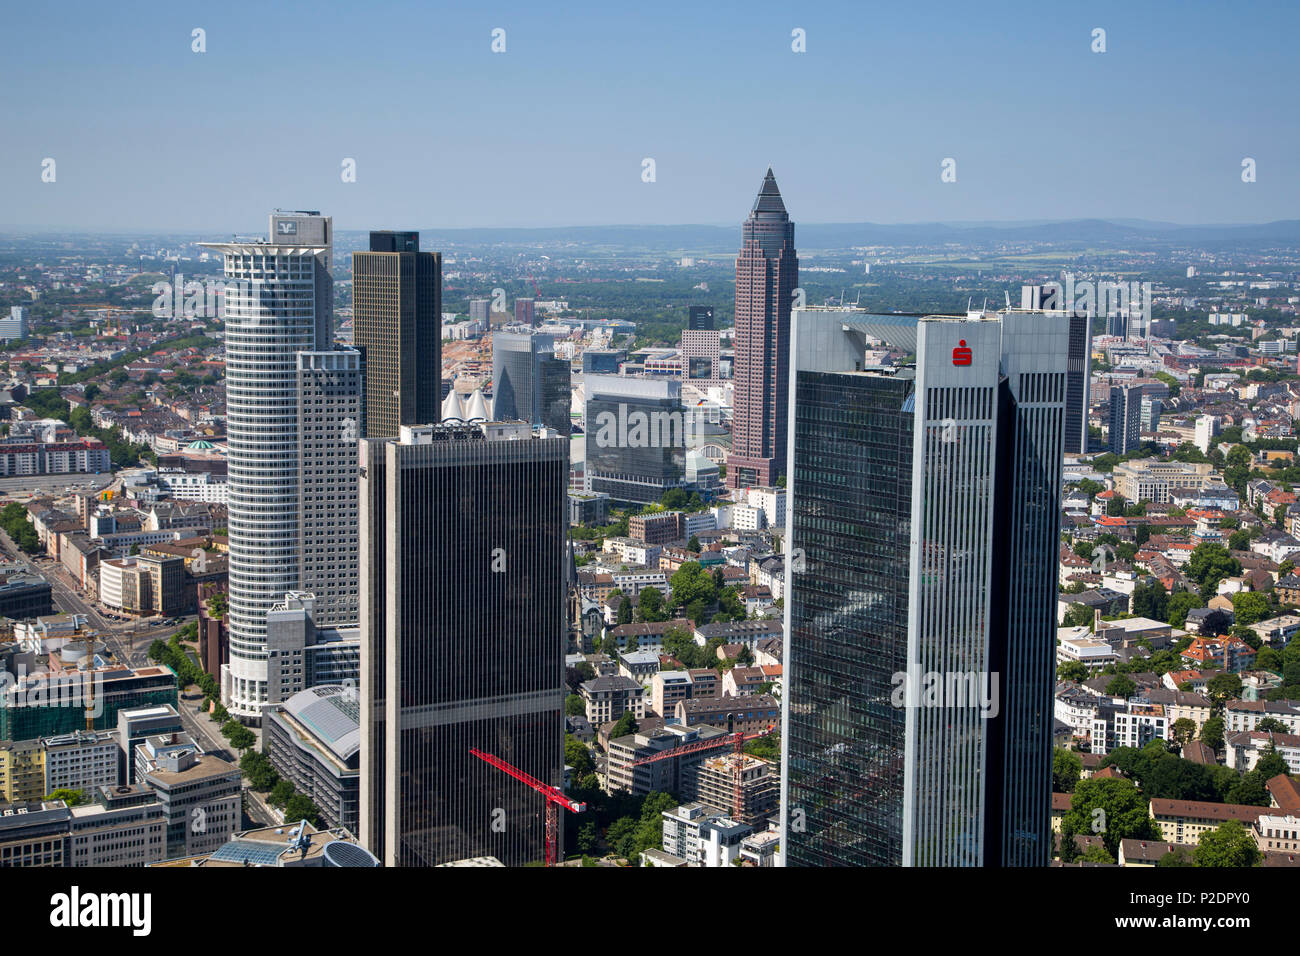 Vista desde la torre principal a través de los rascacielos, el distrito financiero de Frankfurt am Main, Hessen, Alemania, Europa Foto de stock